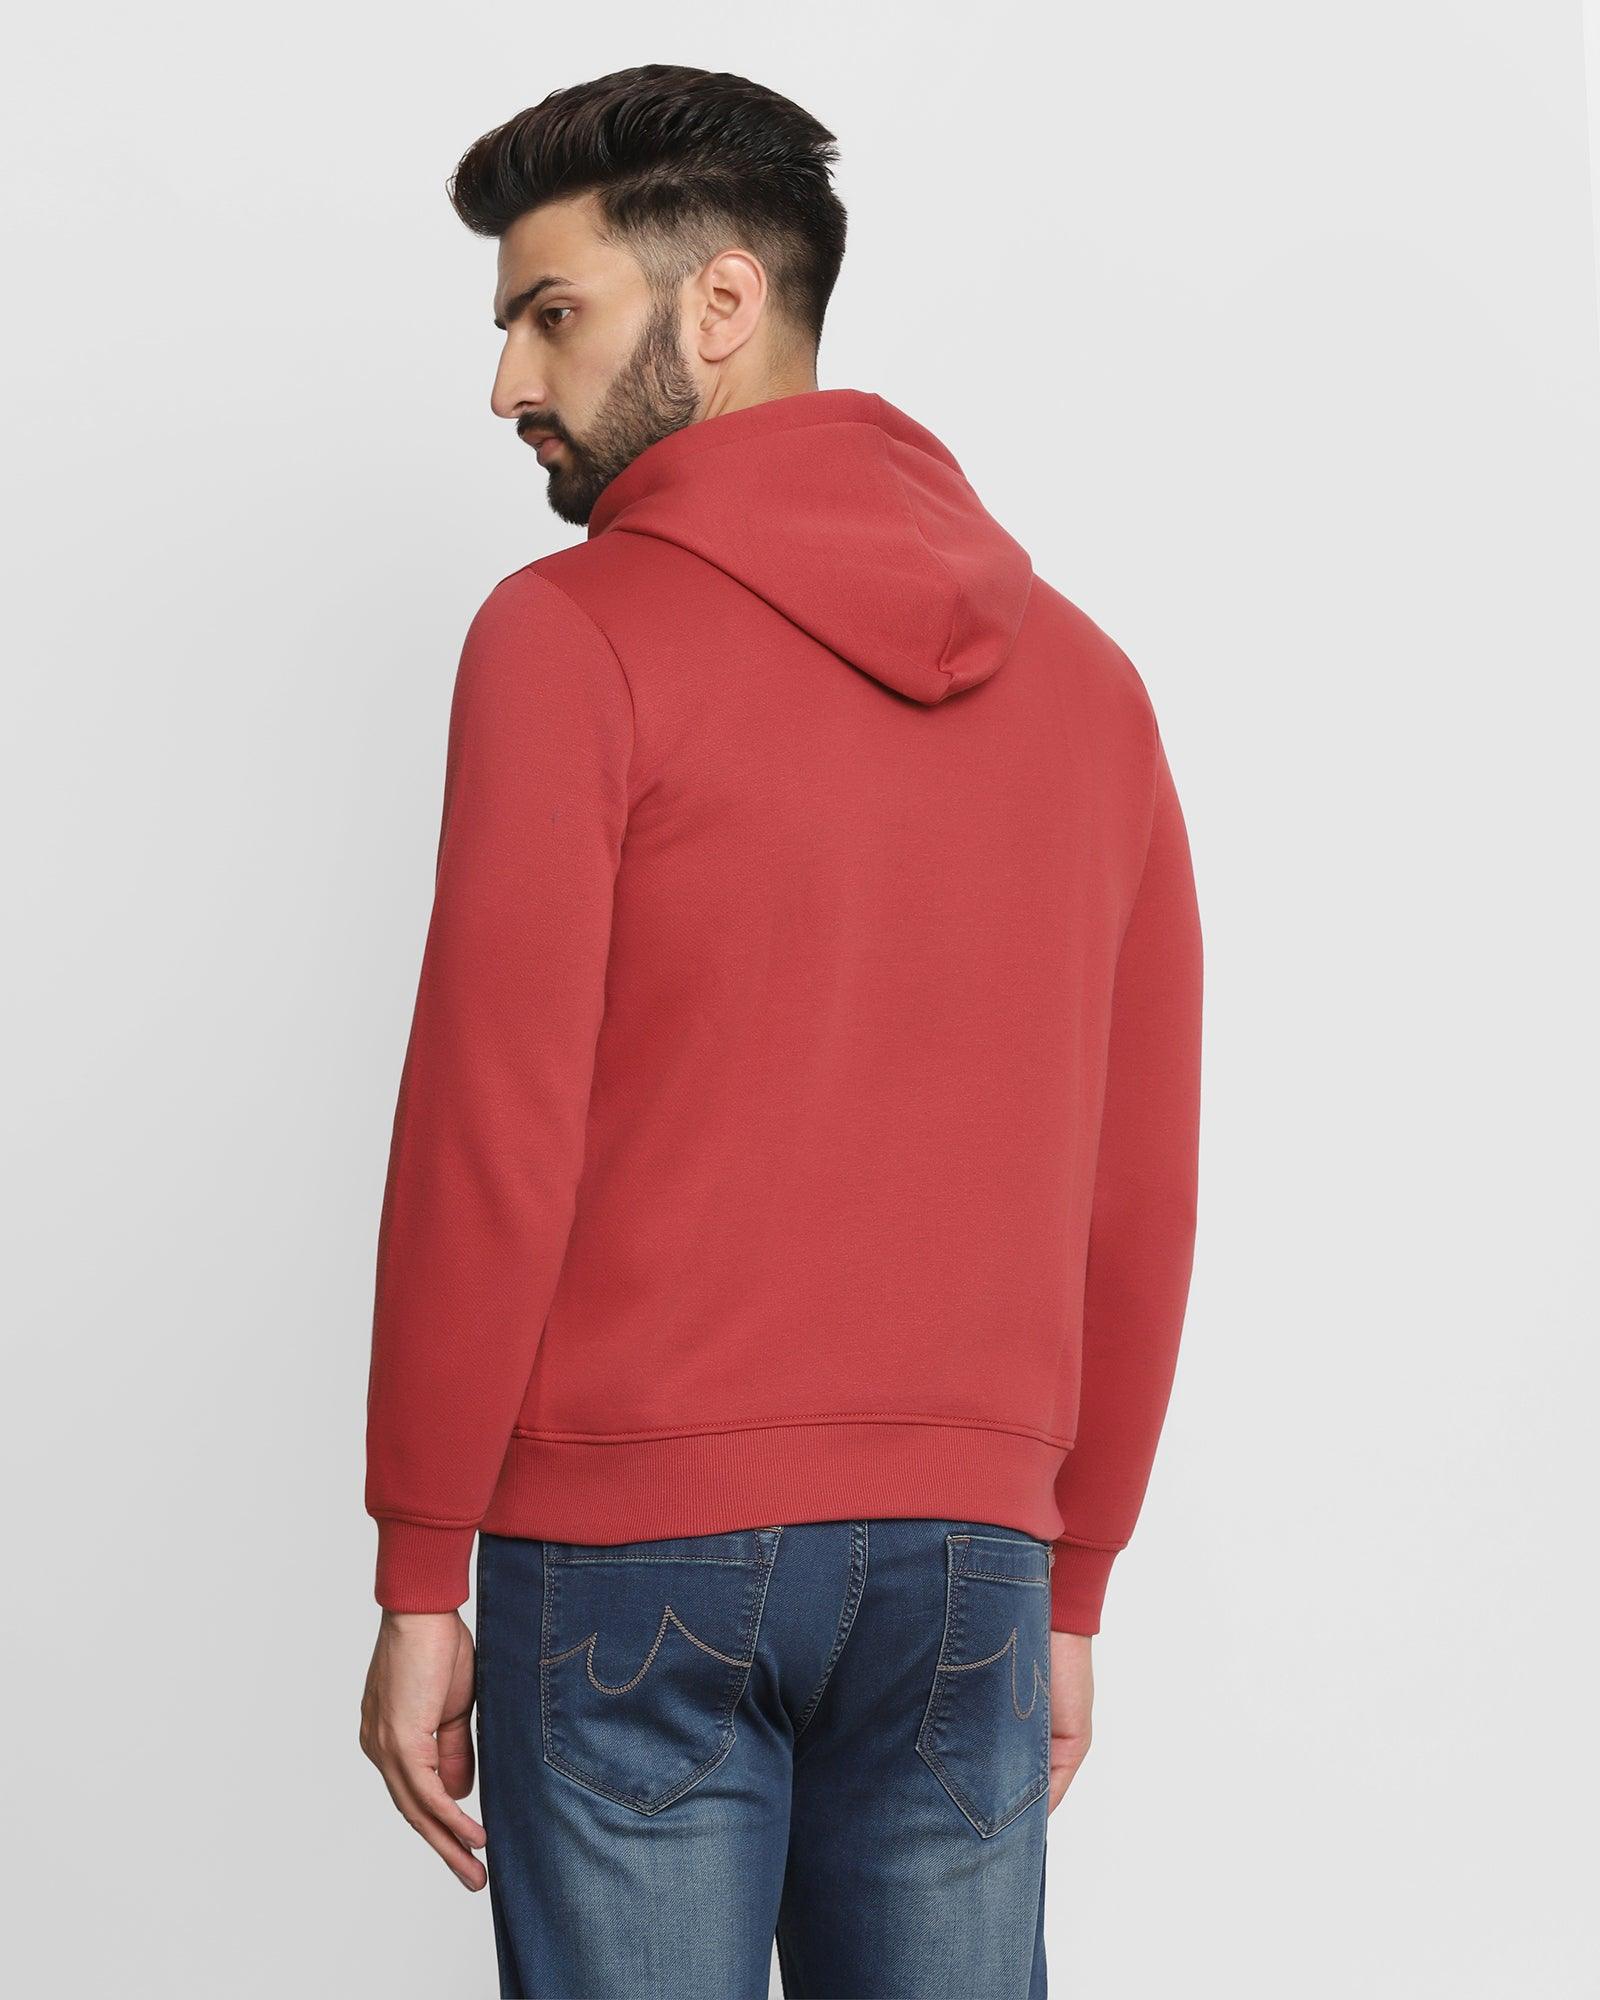 Hoodie Red Solid Sweatshirt - Kied